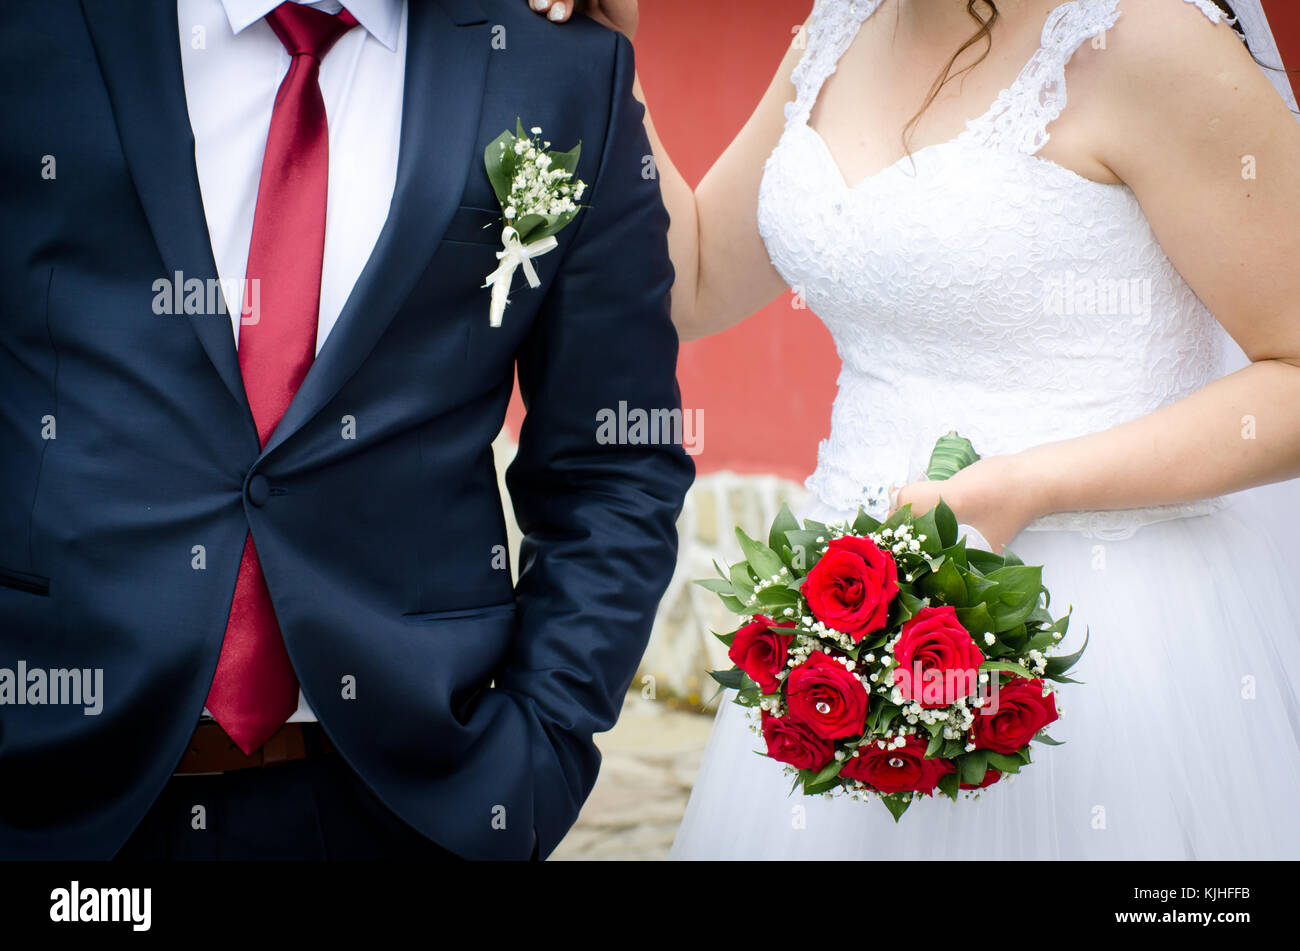 Braut holding Bouquet und Bräutigam im blauen Anzug und roter Krawatte am  Hochzeitstag Stockfotografie - Alamy